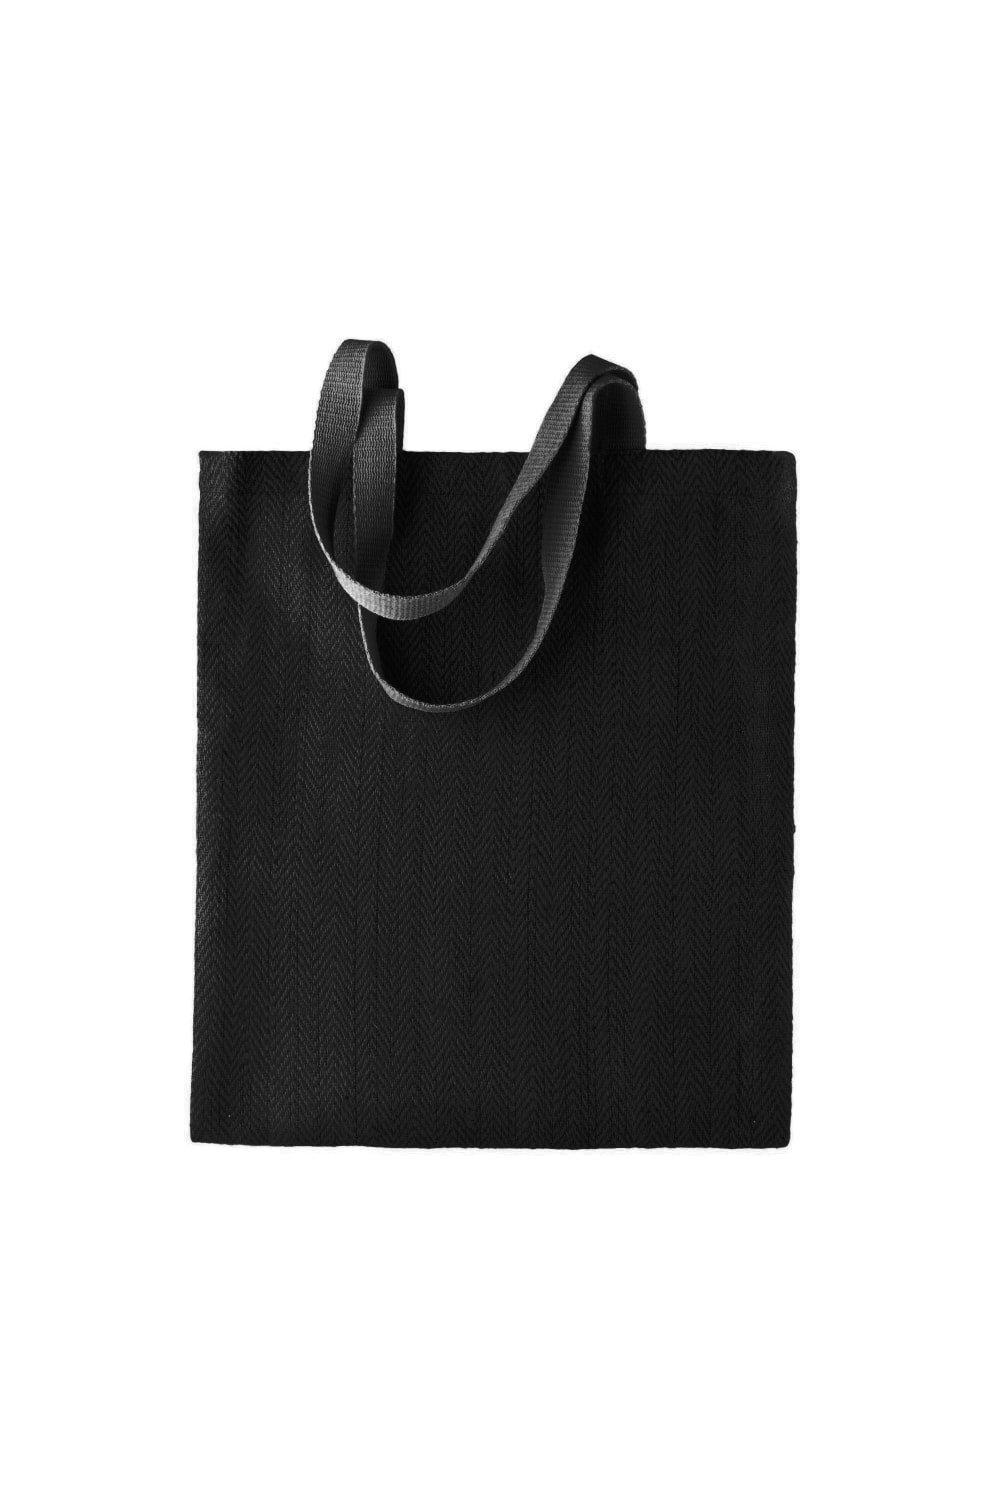 Джутовая сумка с рисунком (2 шт.) Kimood, черный